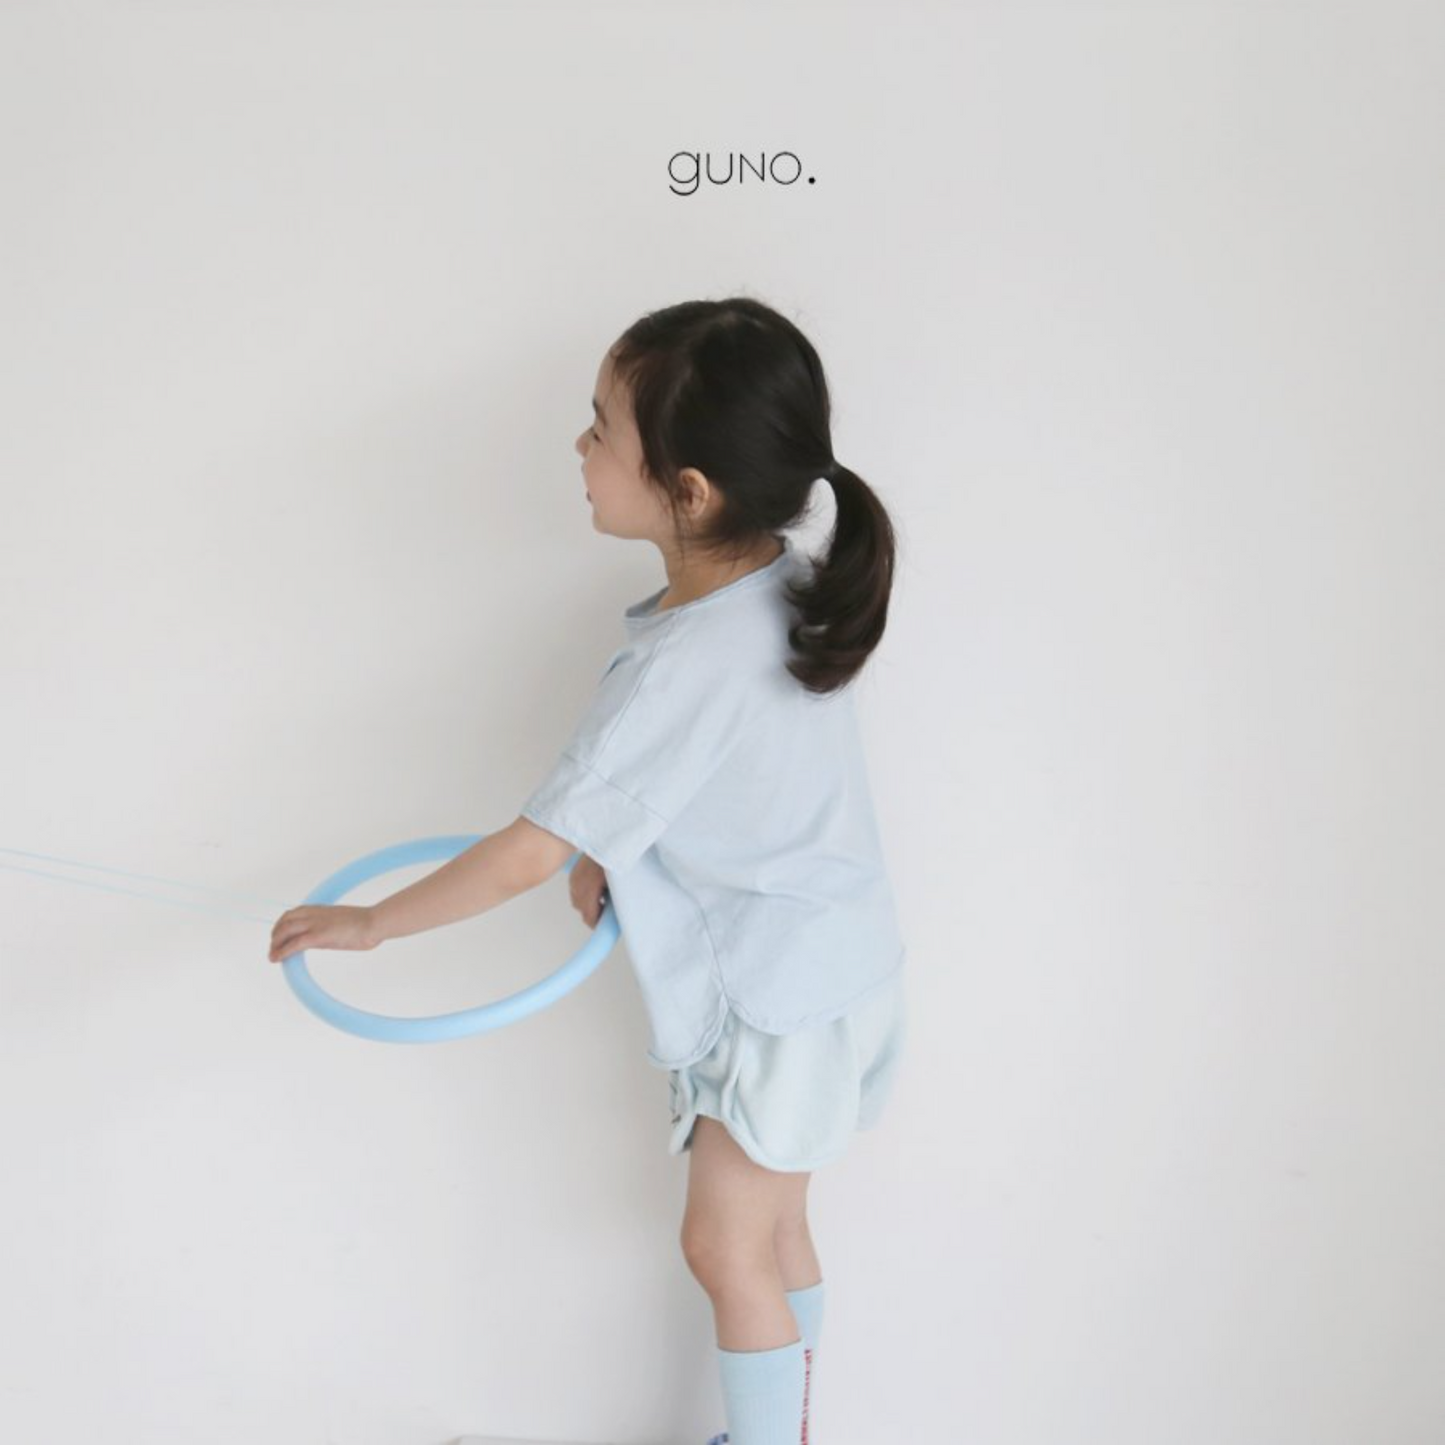 guno. easy shape ショートパンツ(こども服) - kids clothes shop GUZUGUZU